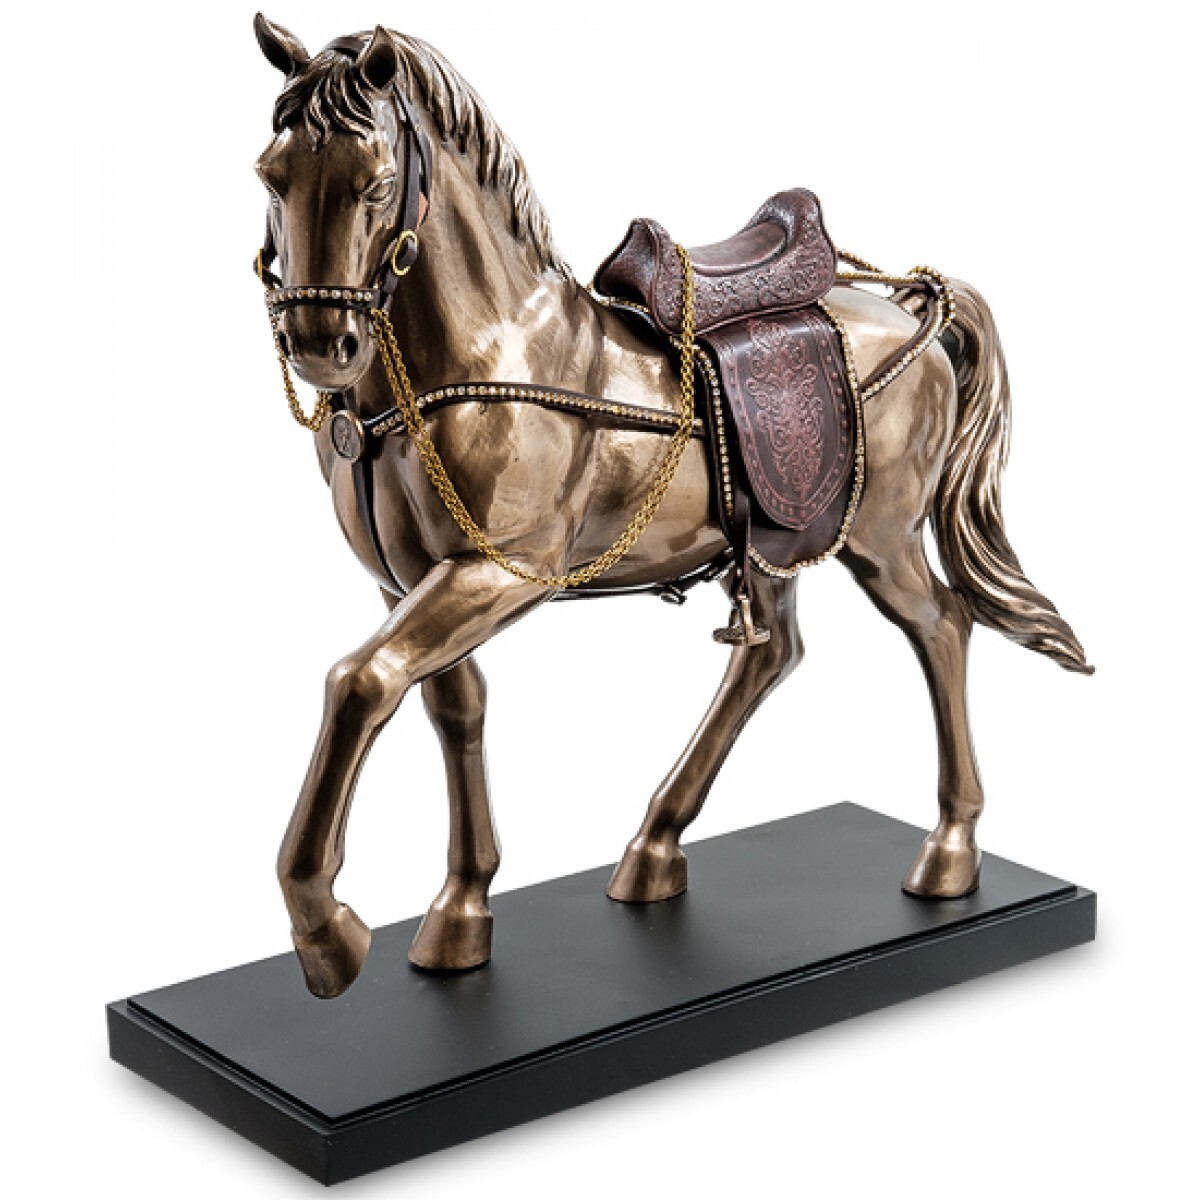 Статуэтка лошадки. WS-939 статуэтка лошадь. Veronese статуэтки. Mattel Spirit лошадь 4 gxf00. Фигурка конь Lefard a268623.